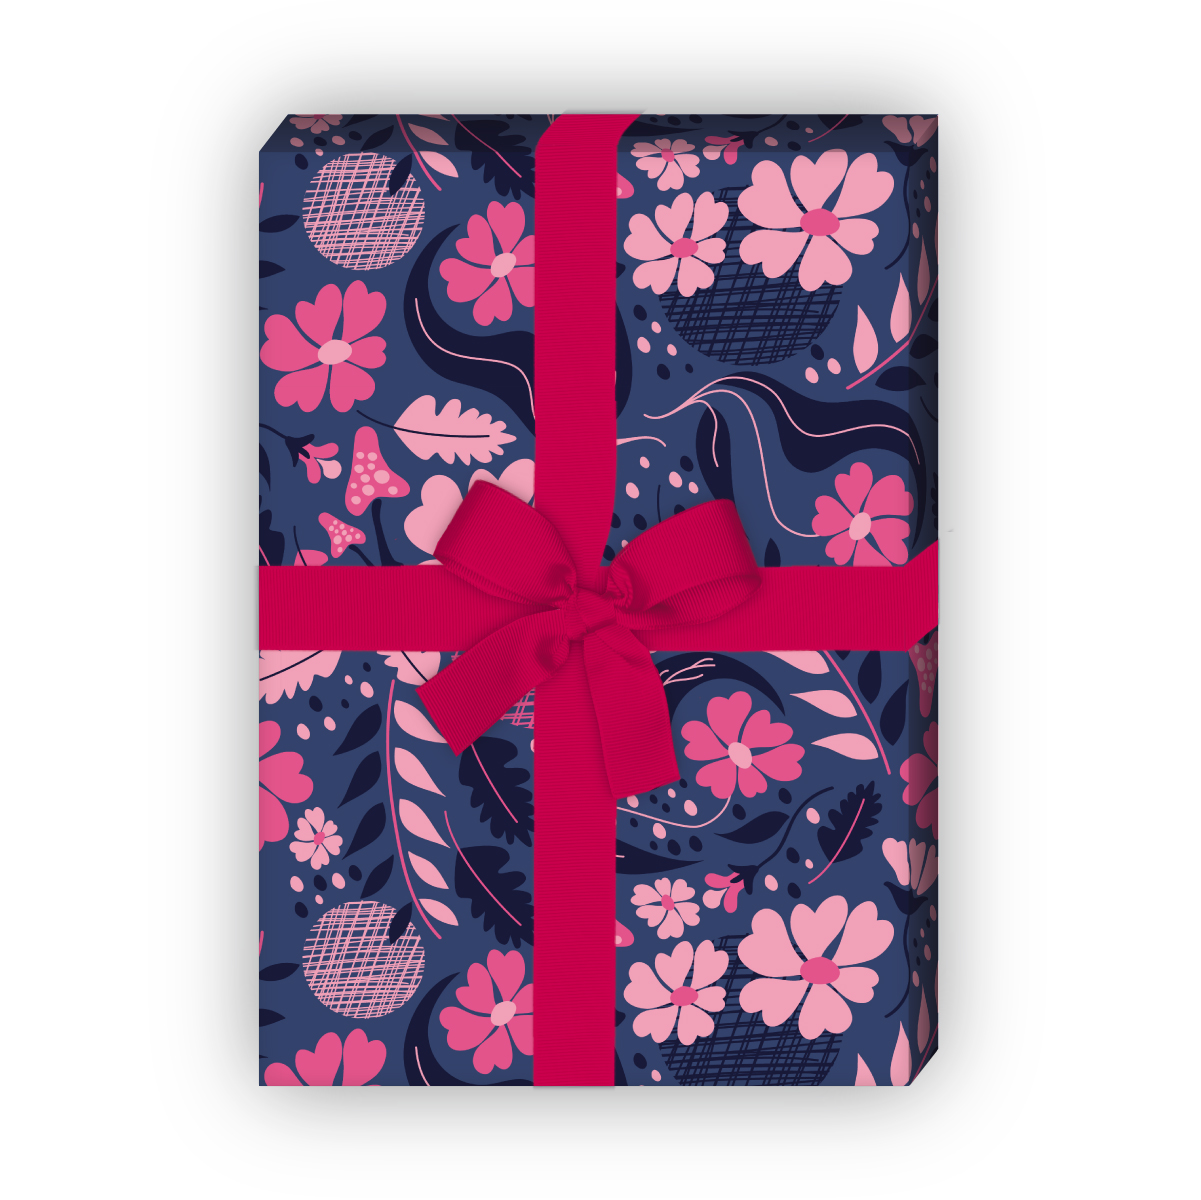 Kartenkaufrausch: Schönes Blumen Geschenkpapier mit aus unserer florale Papeterie in rosa